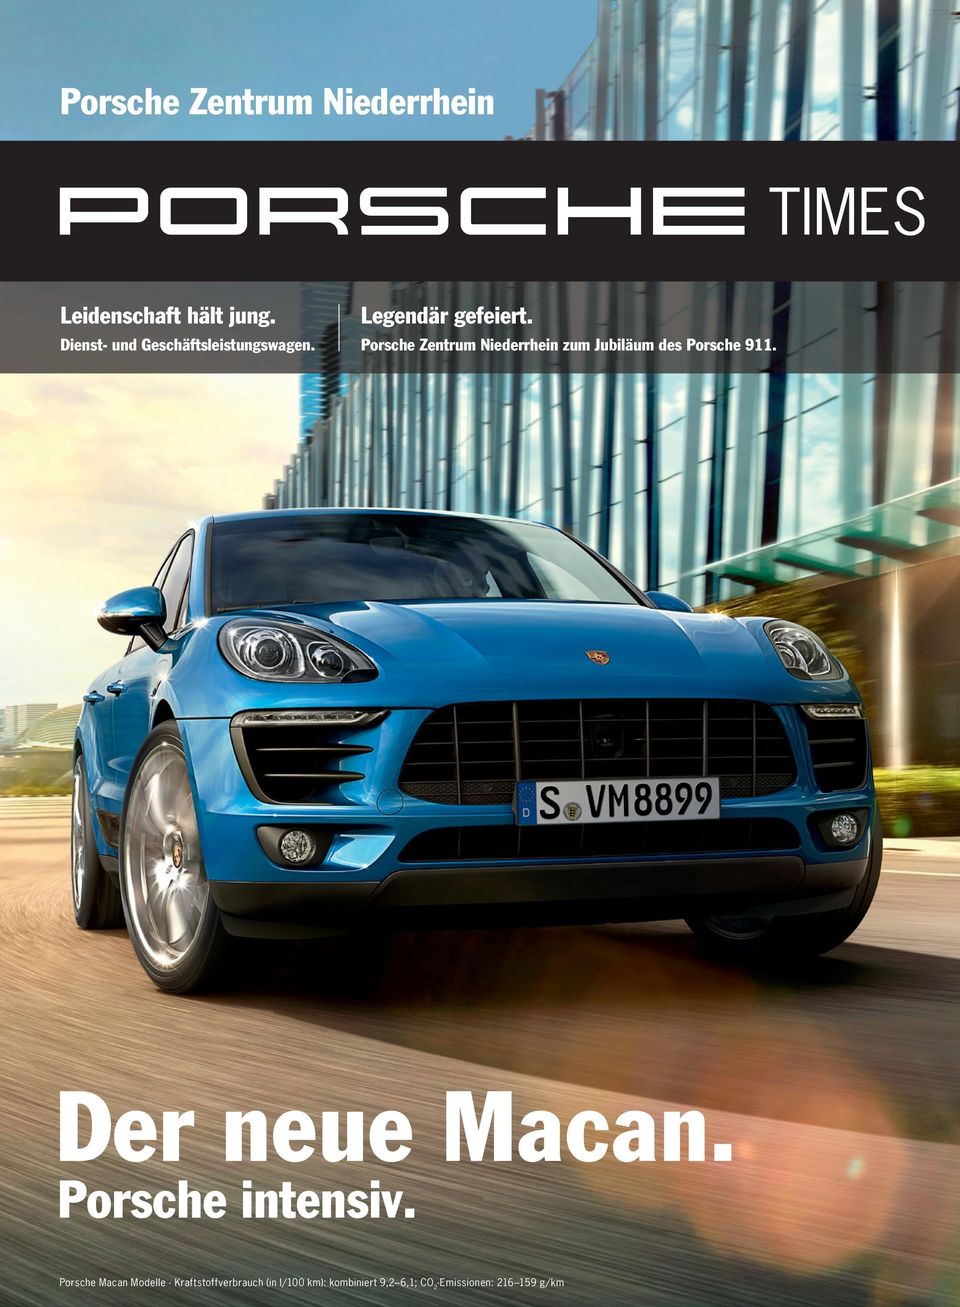 Porsche Zentrum Niederrhein zum Jubiläum des Porsche 911. Der neue Macan.